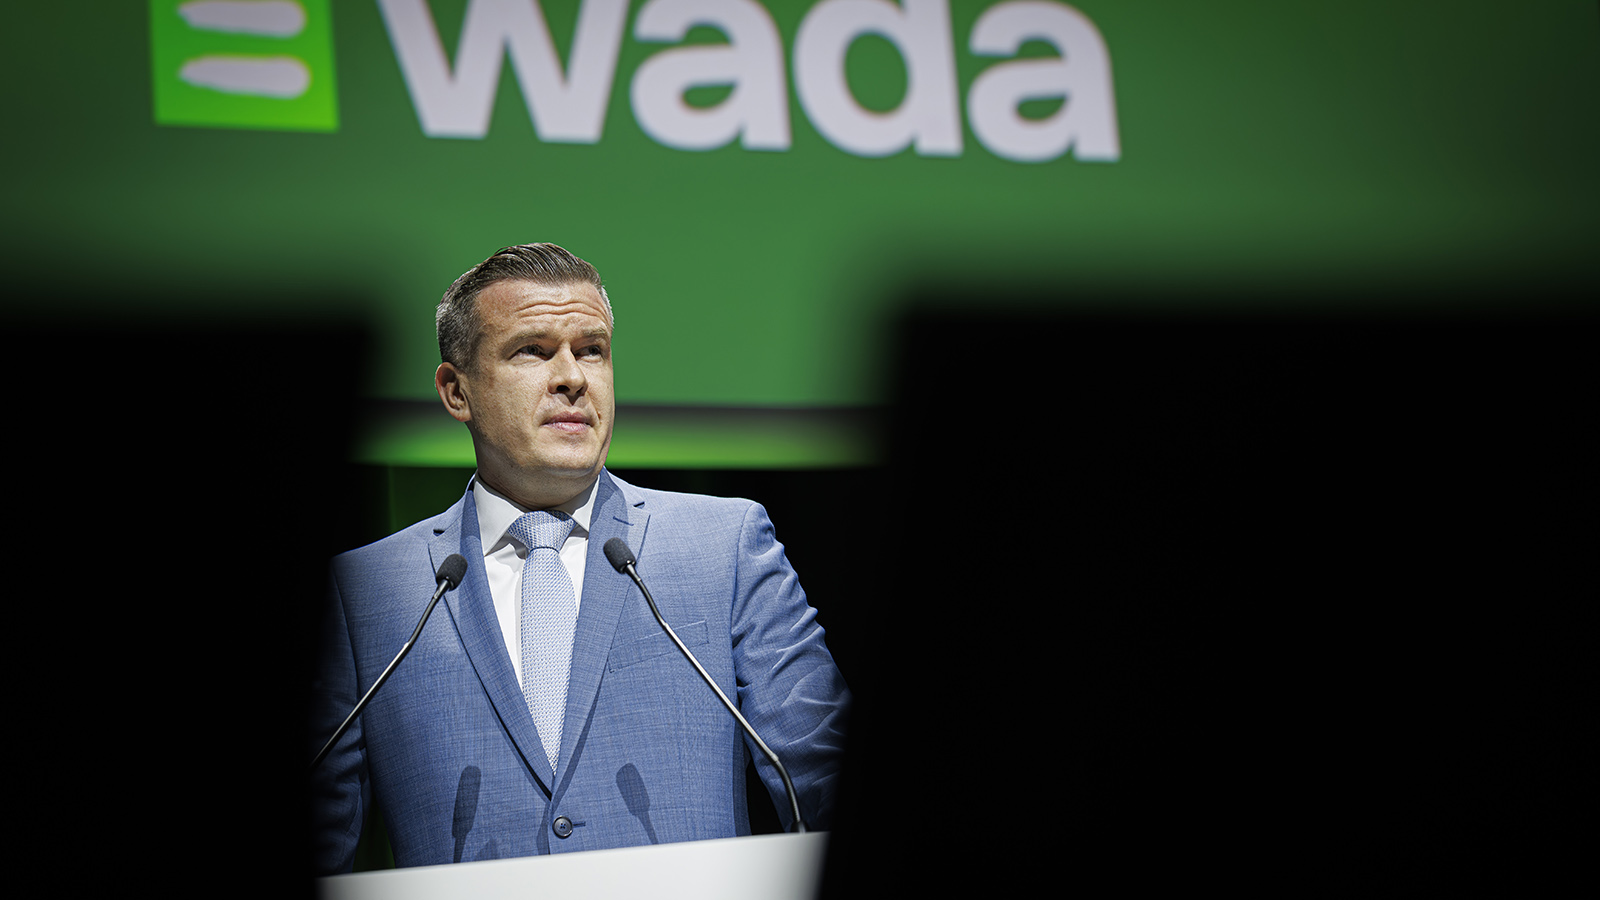 15 тонн допинга и подпольные лаборатории: разведка WADA отчиталась о достижениях